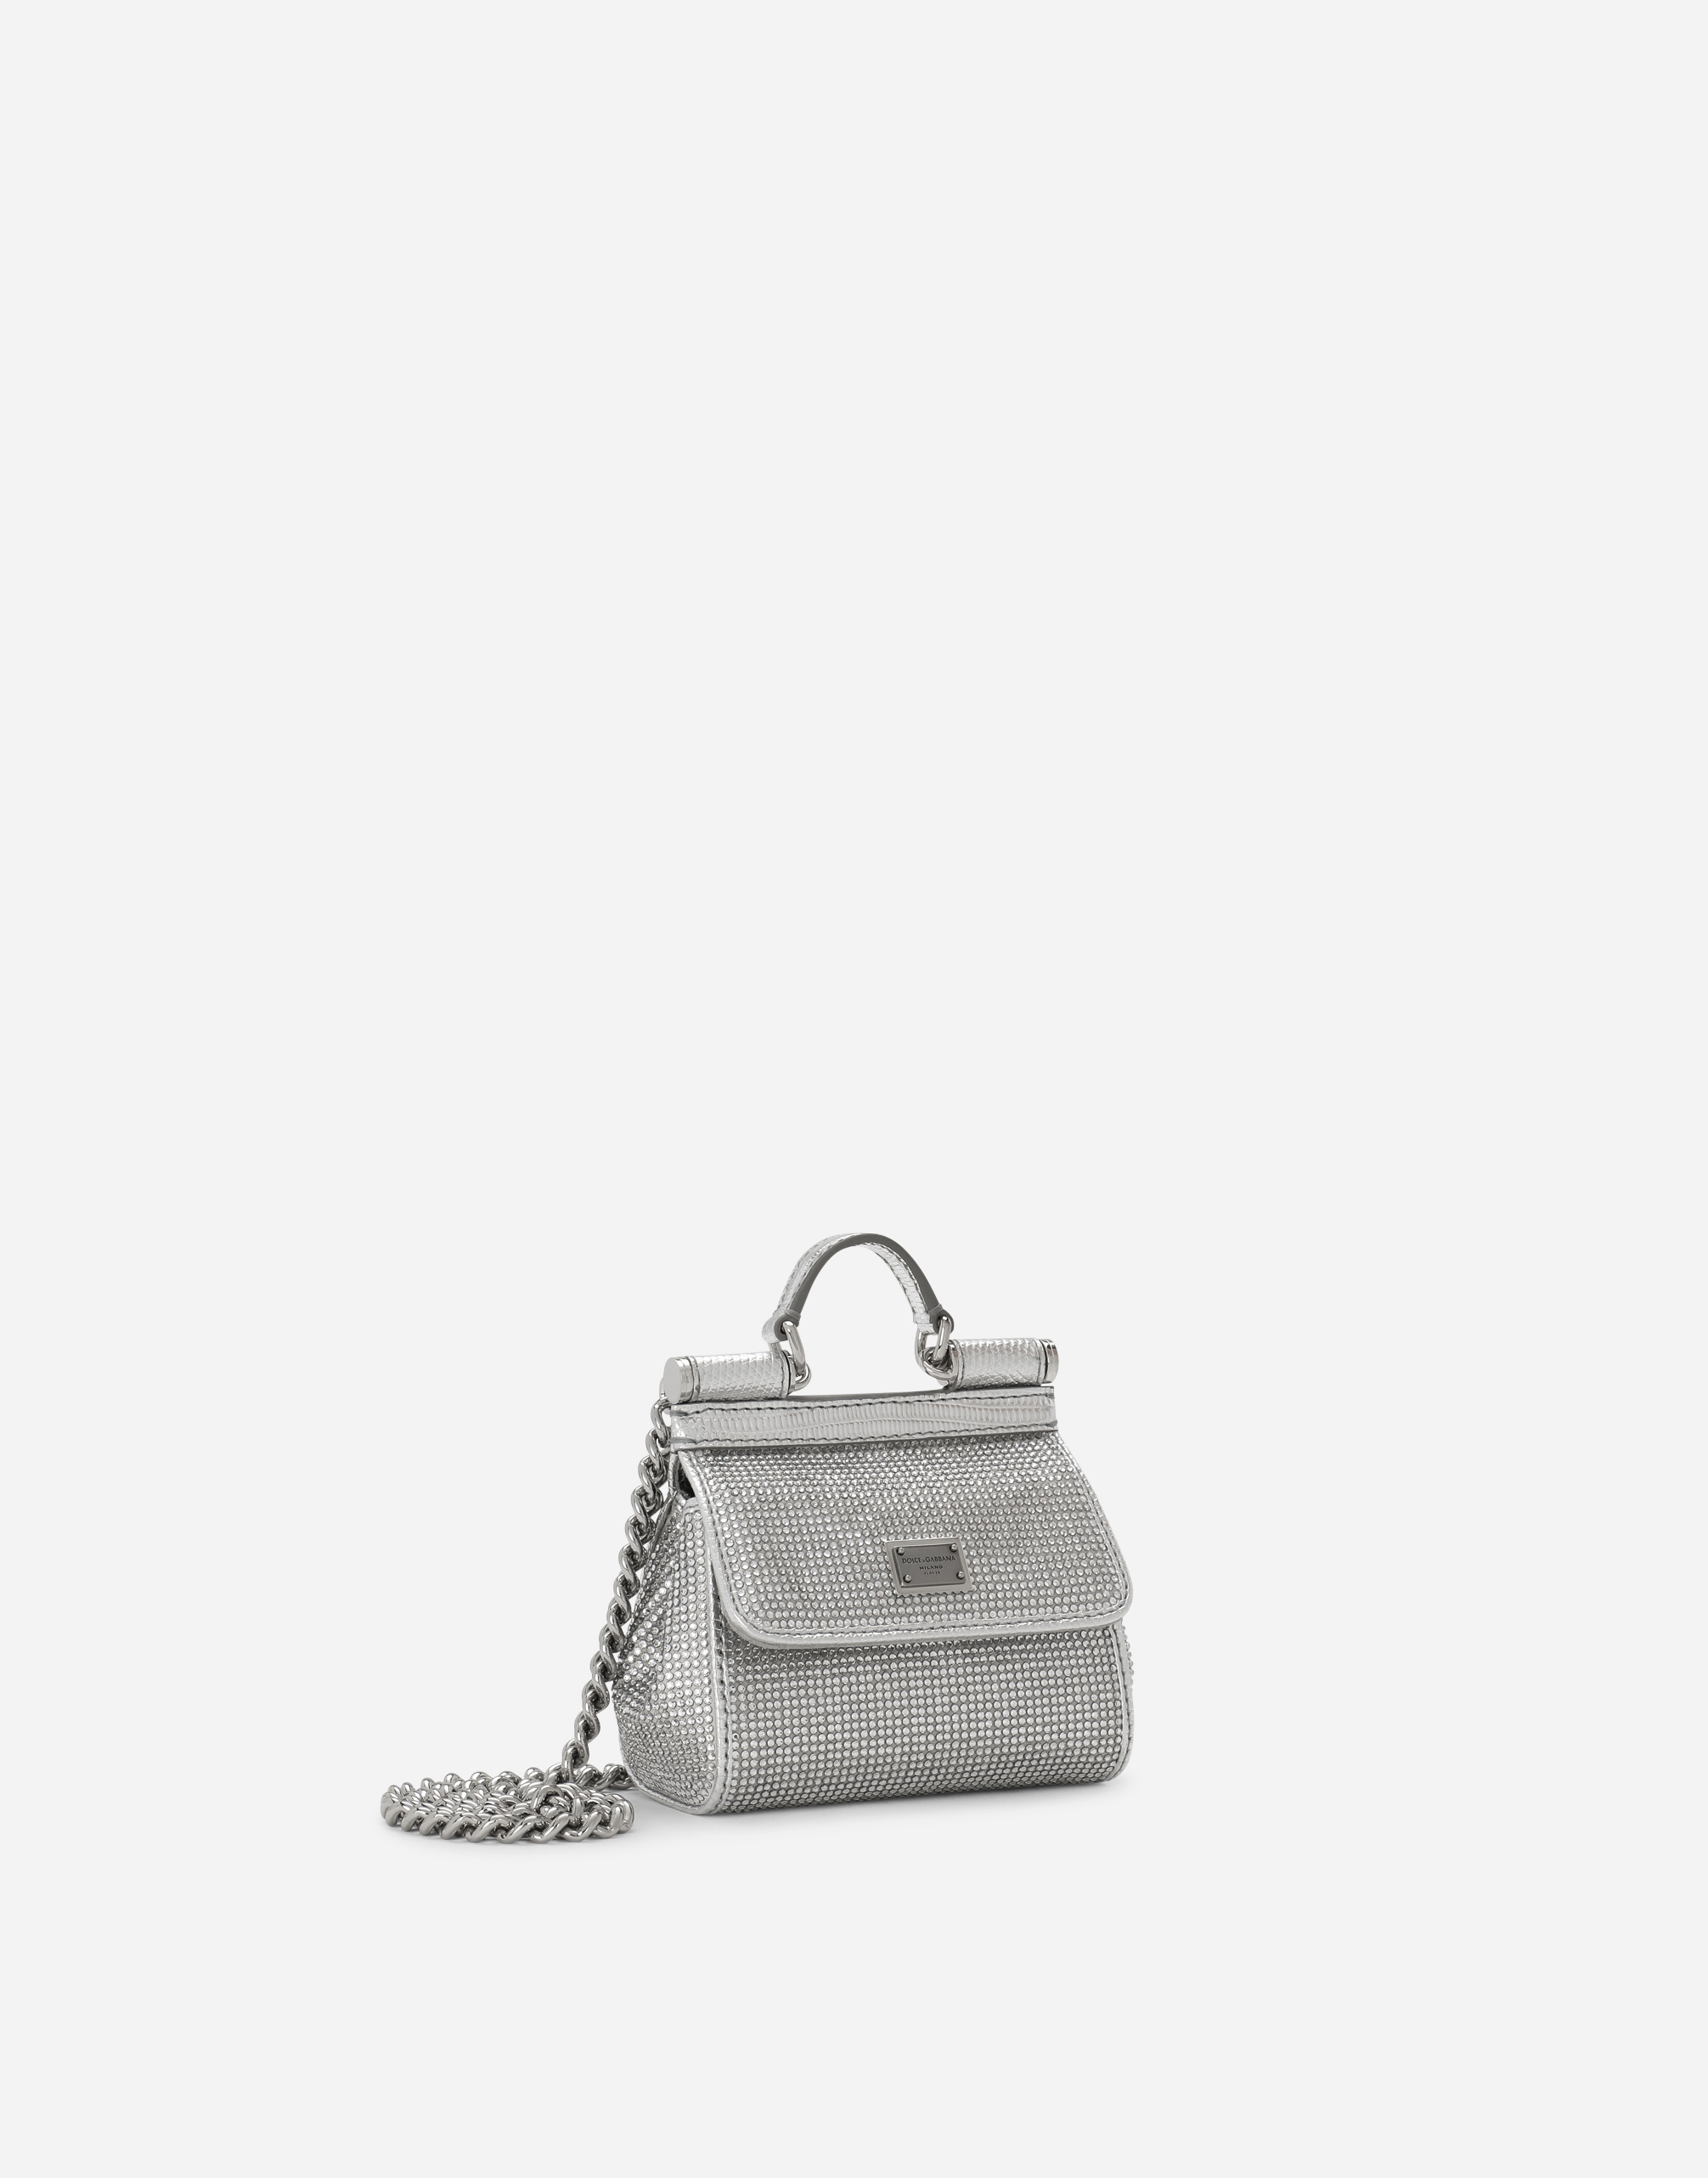 Dolce & Gabbana Small Kim Sicily Clear Handbag